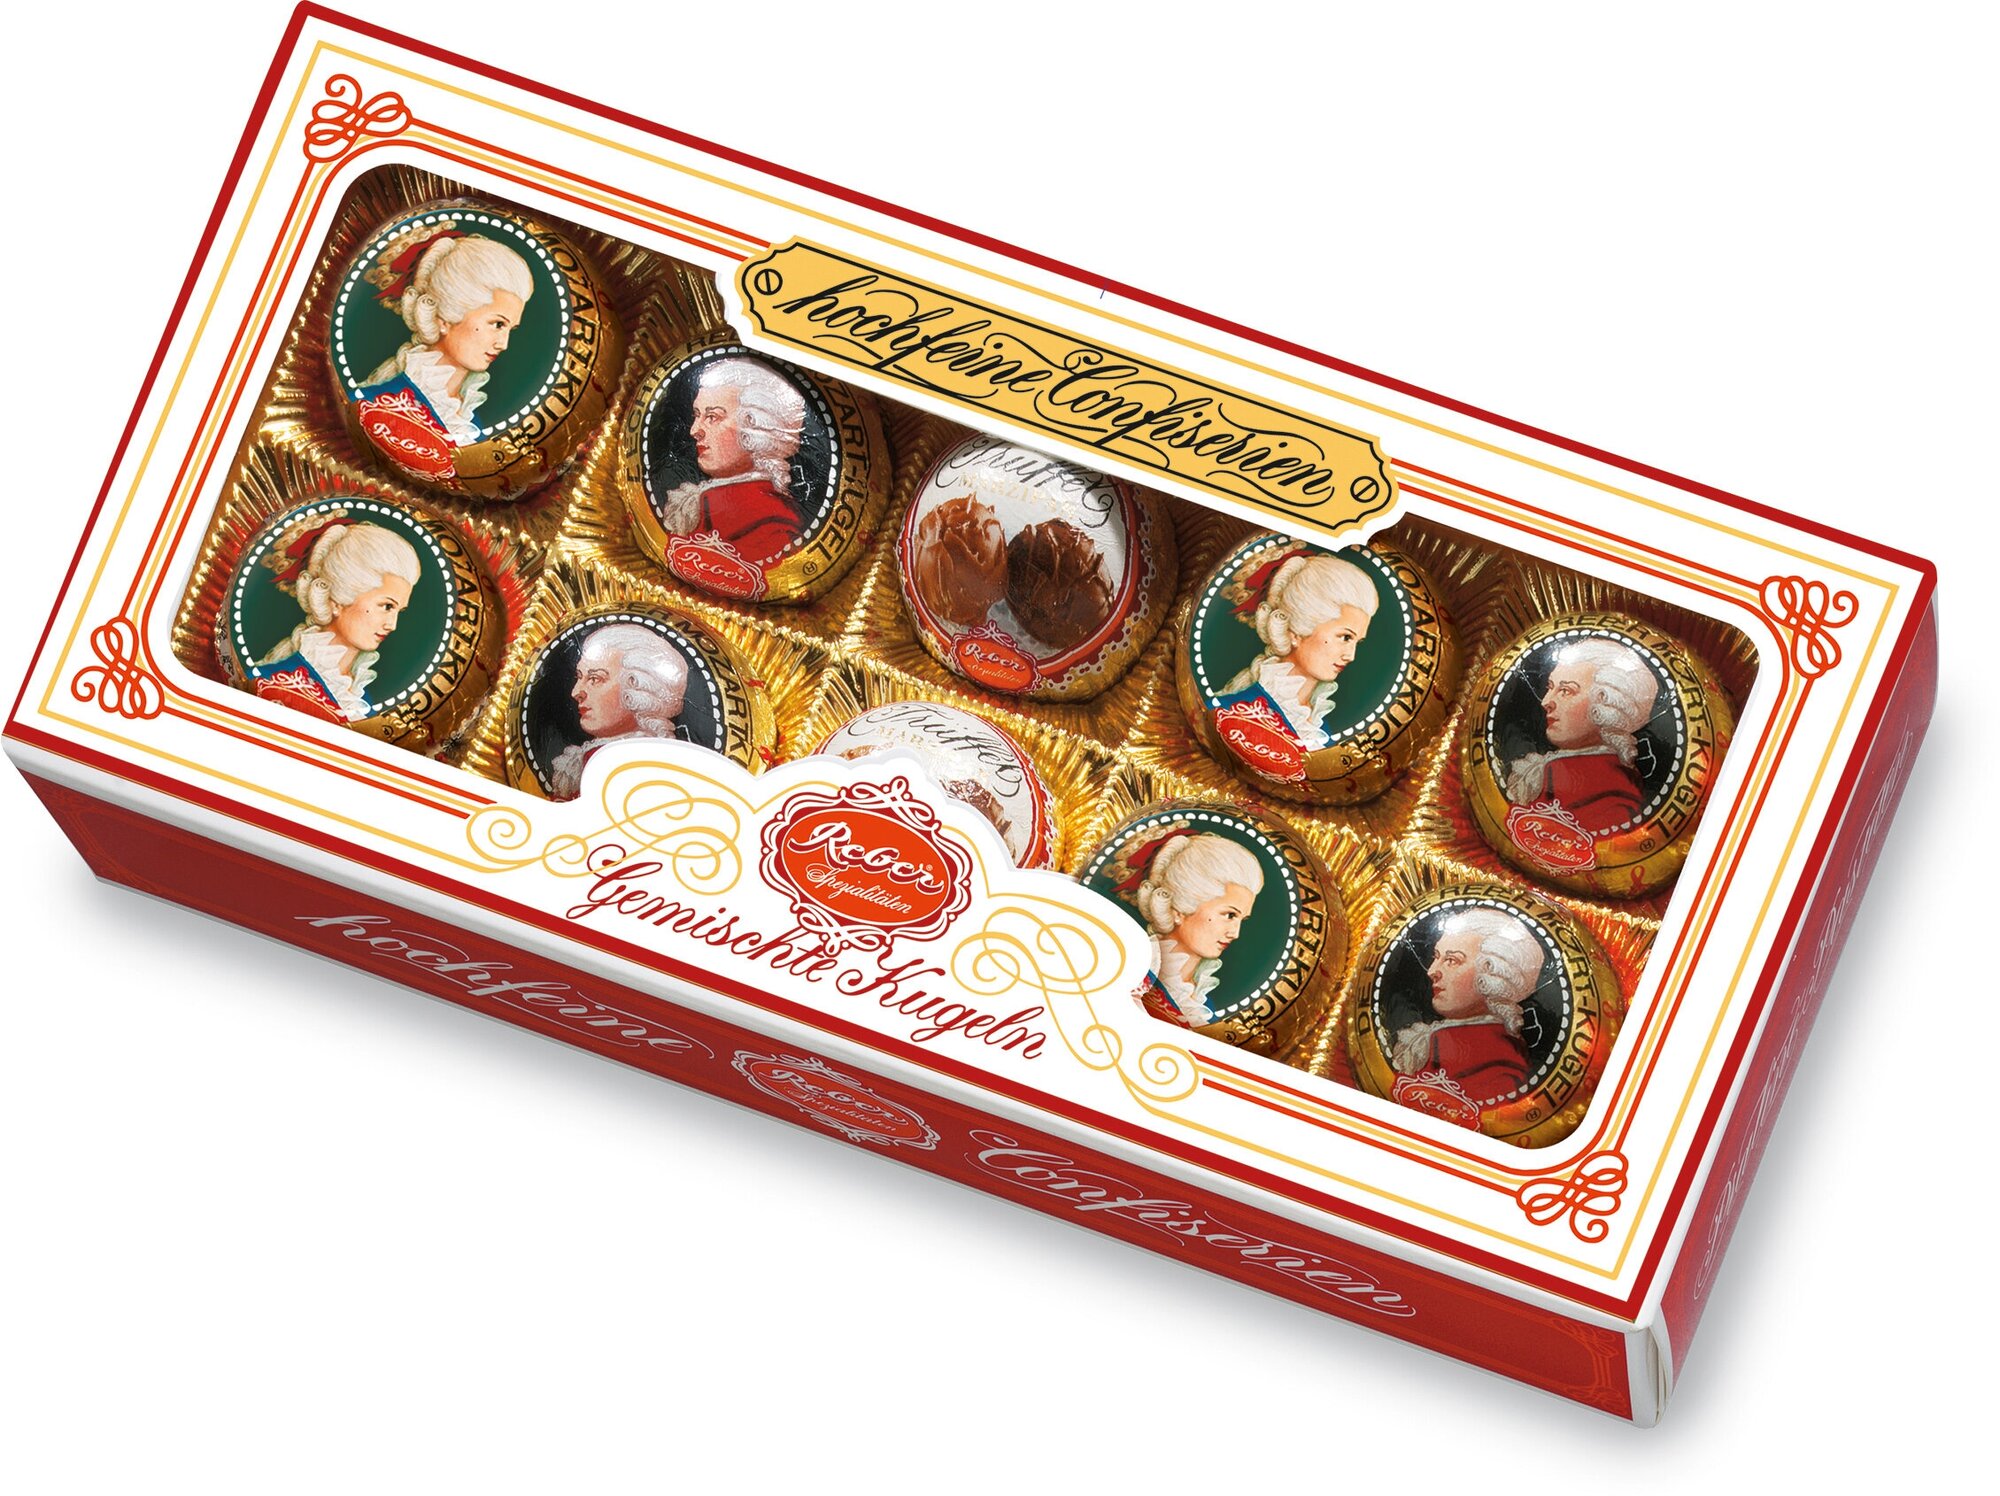 Подарочный набор Reber Моцарт Шоколадные конфеты из горького и молочного шоколада, 200 г